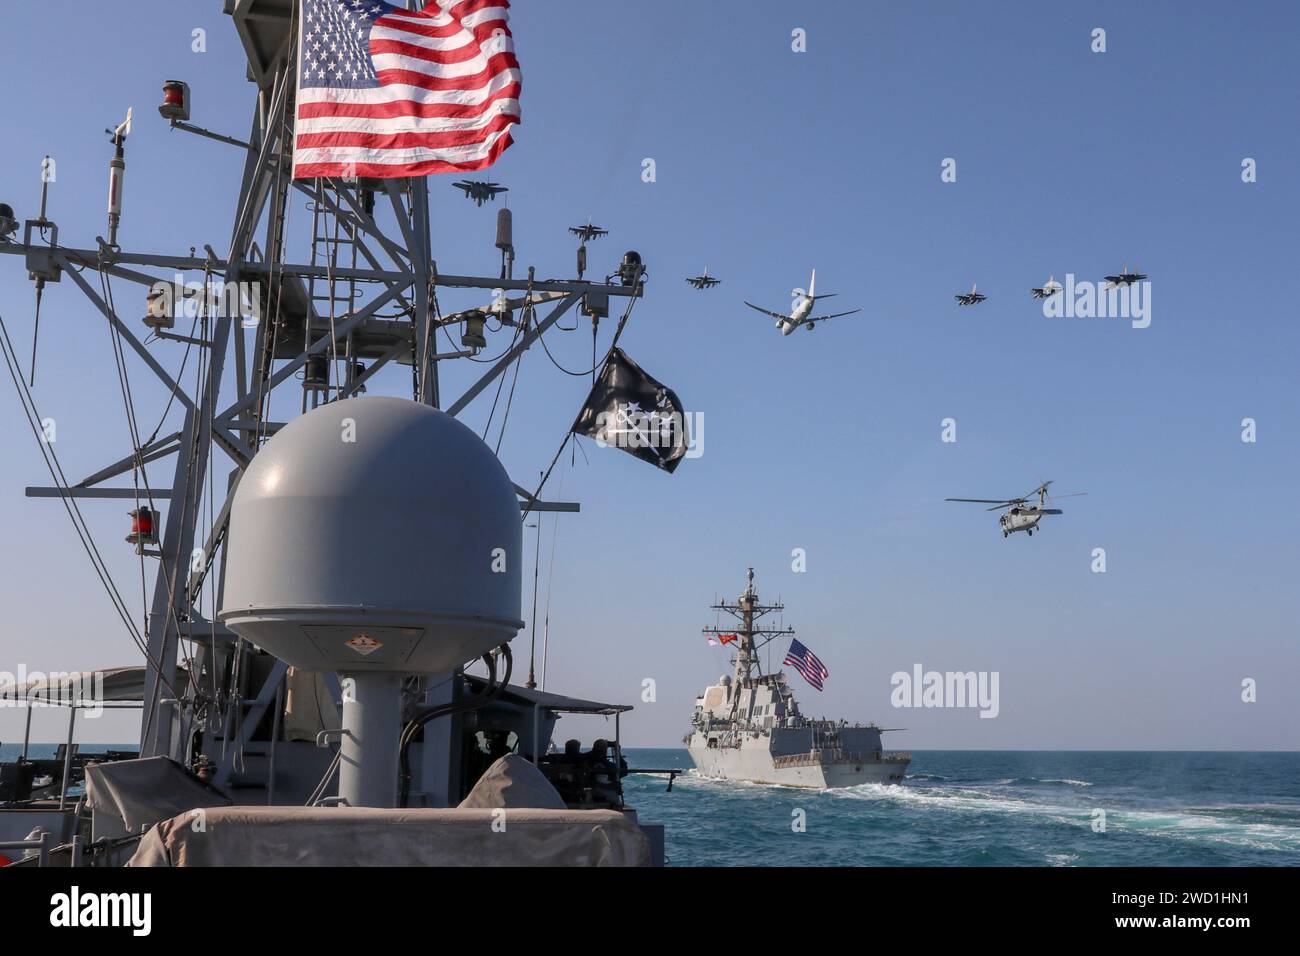 Des avions de la Royal Saudi Air Force et des avions militaires américains volent au-dessus des navires USS Winston Churchill et USS Firebolt. Banque D'Images